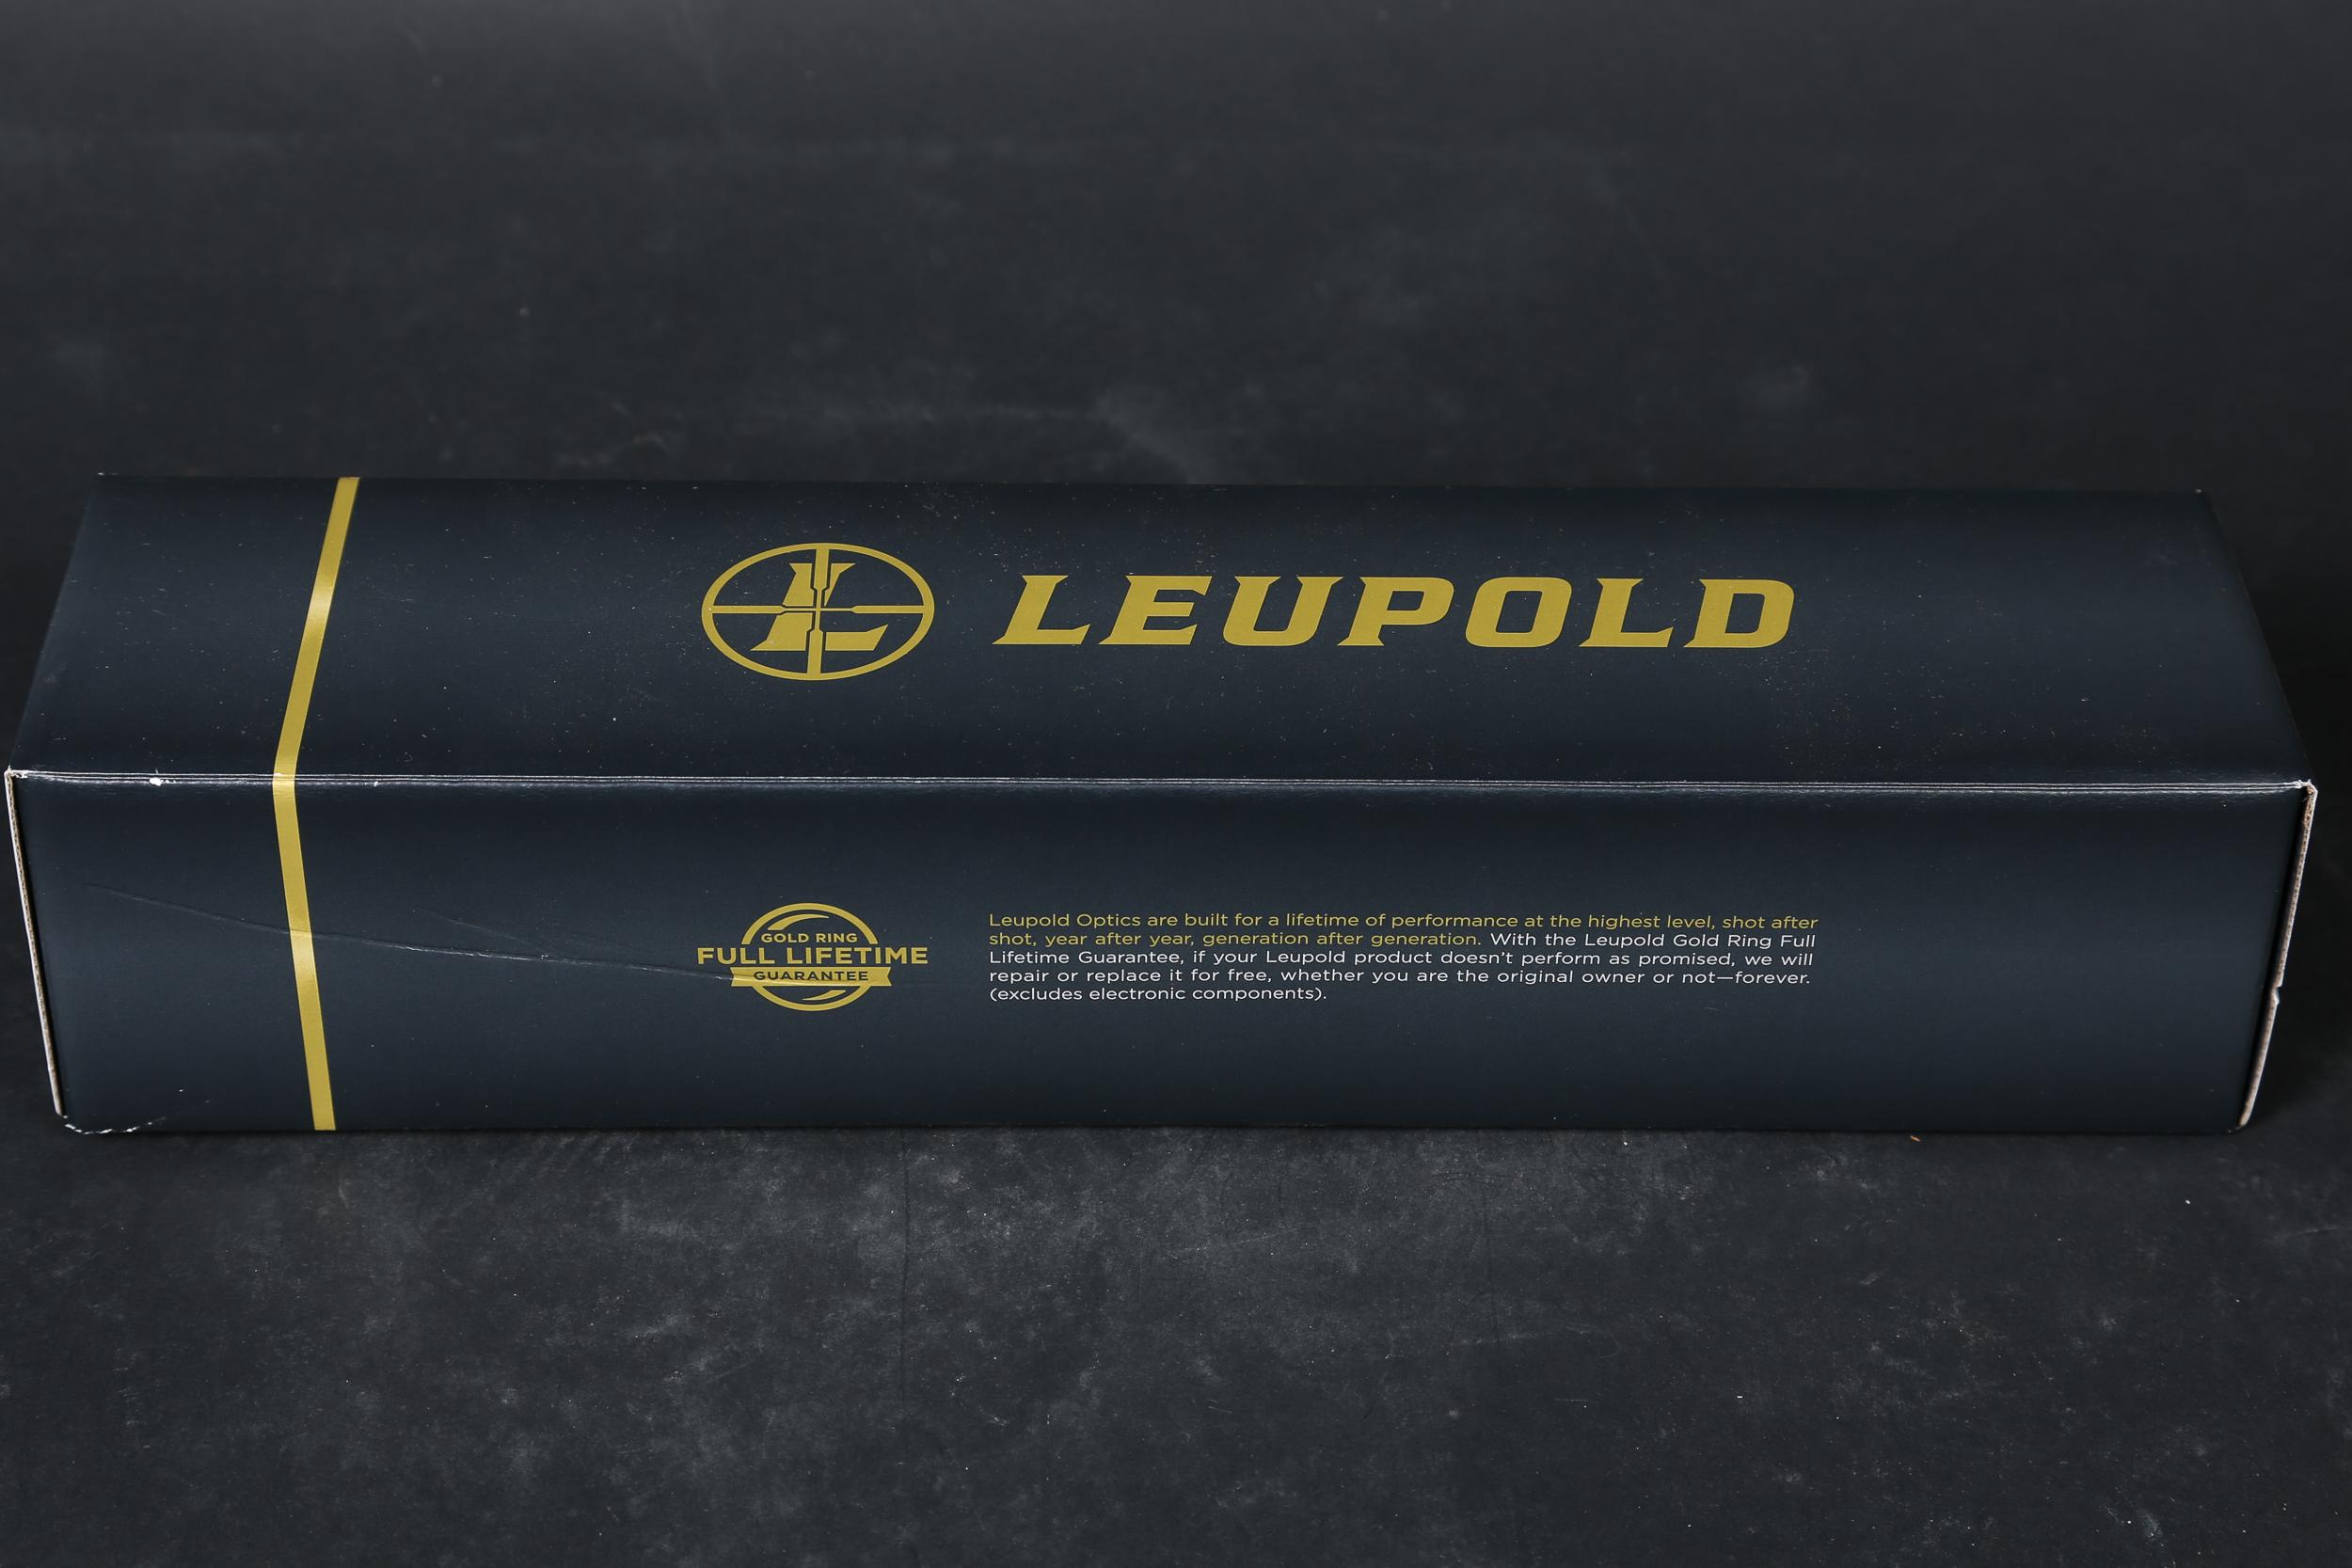 Leupold Scope 3-9x40